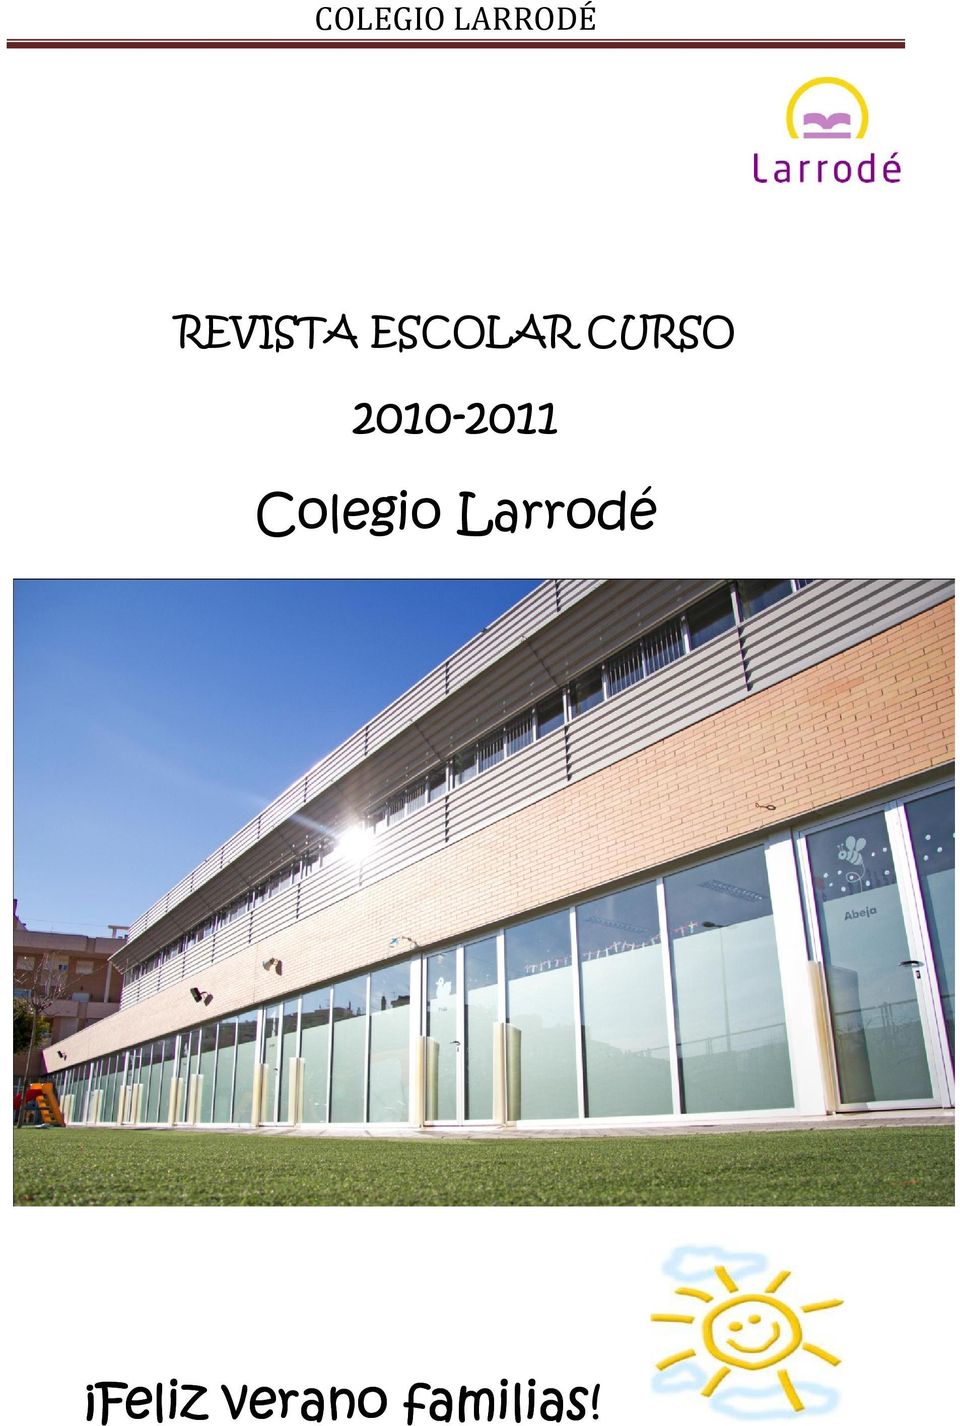 Colegio Larrodé